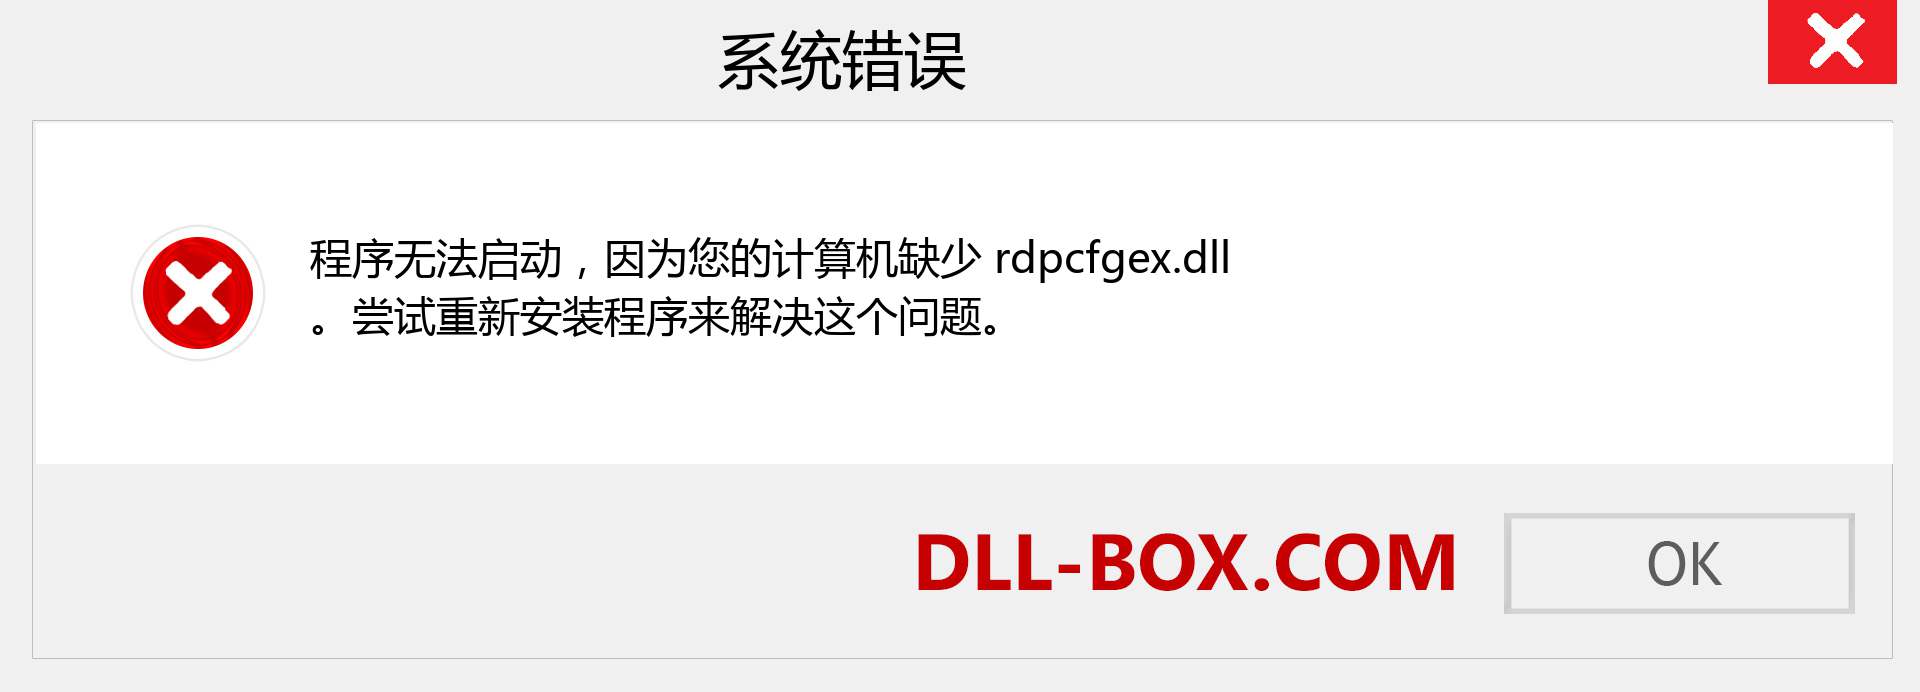 rdpcfgex.dll 文件丢失？。 适用于 Windows 7、8、10 的下载 - 修复 Windows、照片、图像上的 rdpcfgex dll 丢失错误